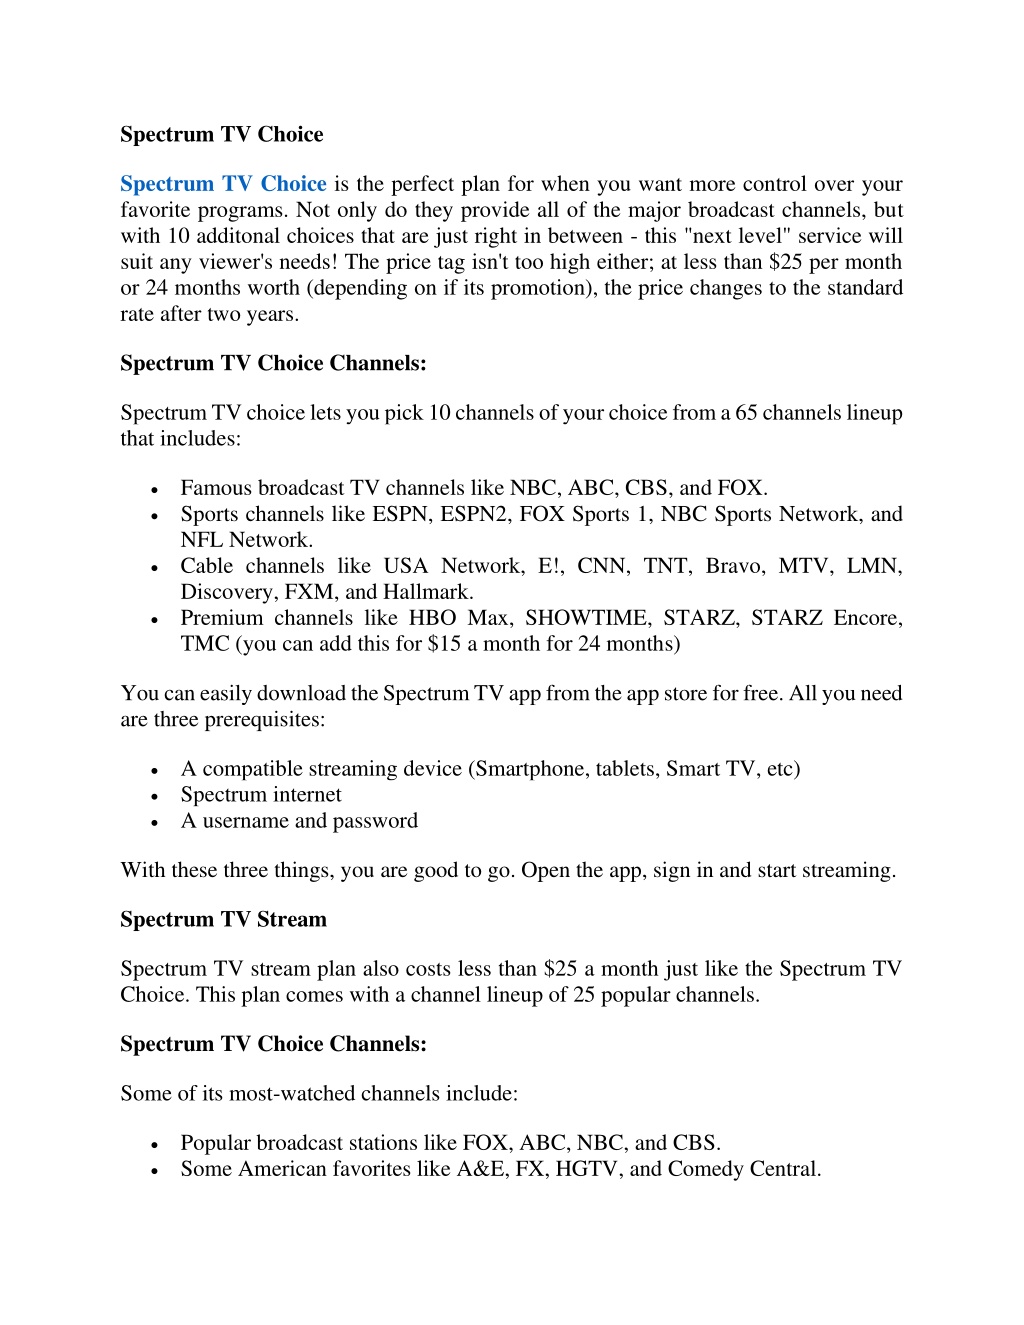 tv choice channels spectrum